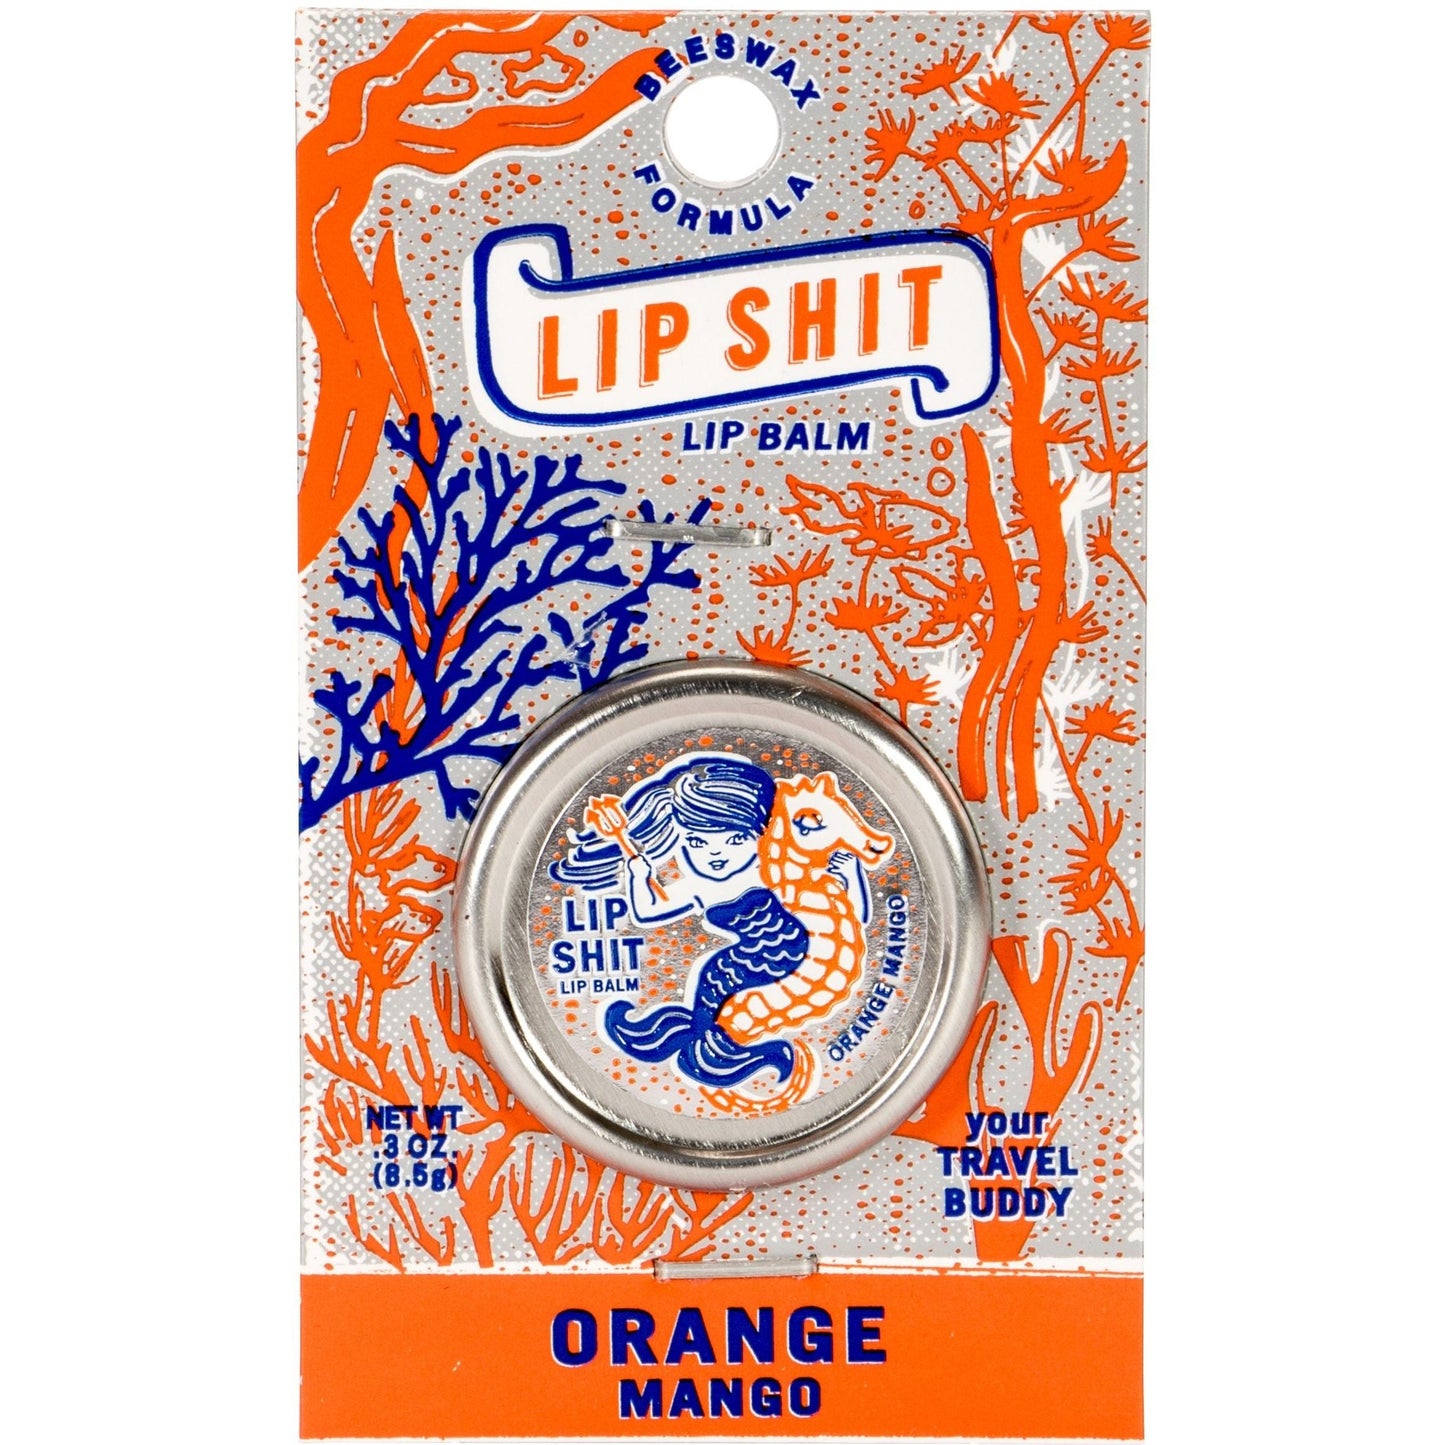 Lip Shit Lip Balm in Orange Mango Beeswax Formula